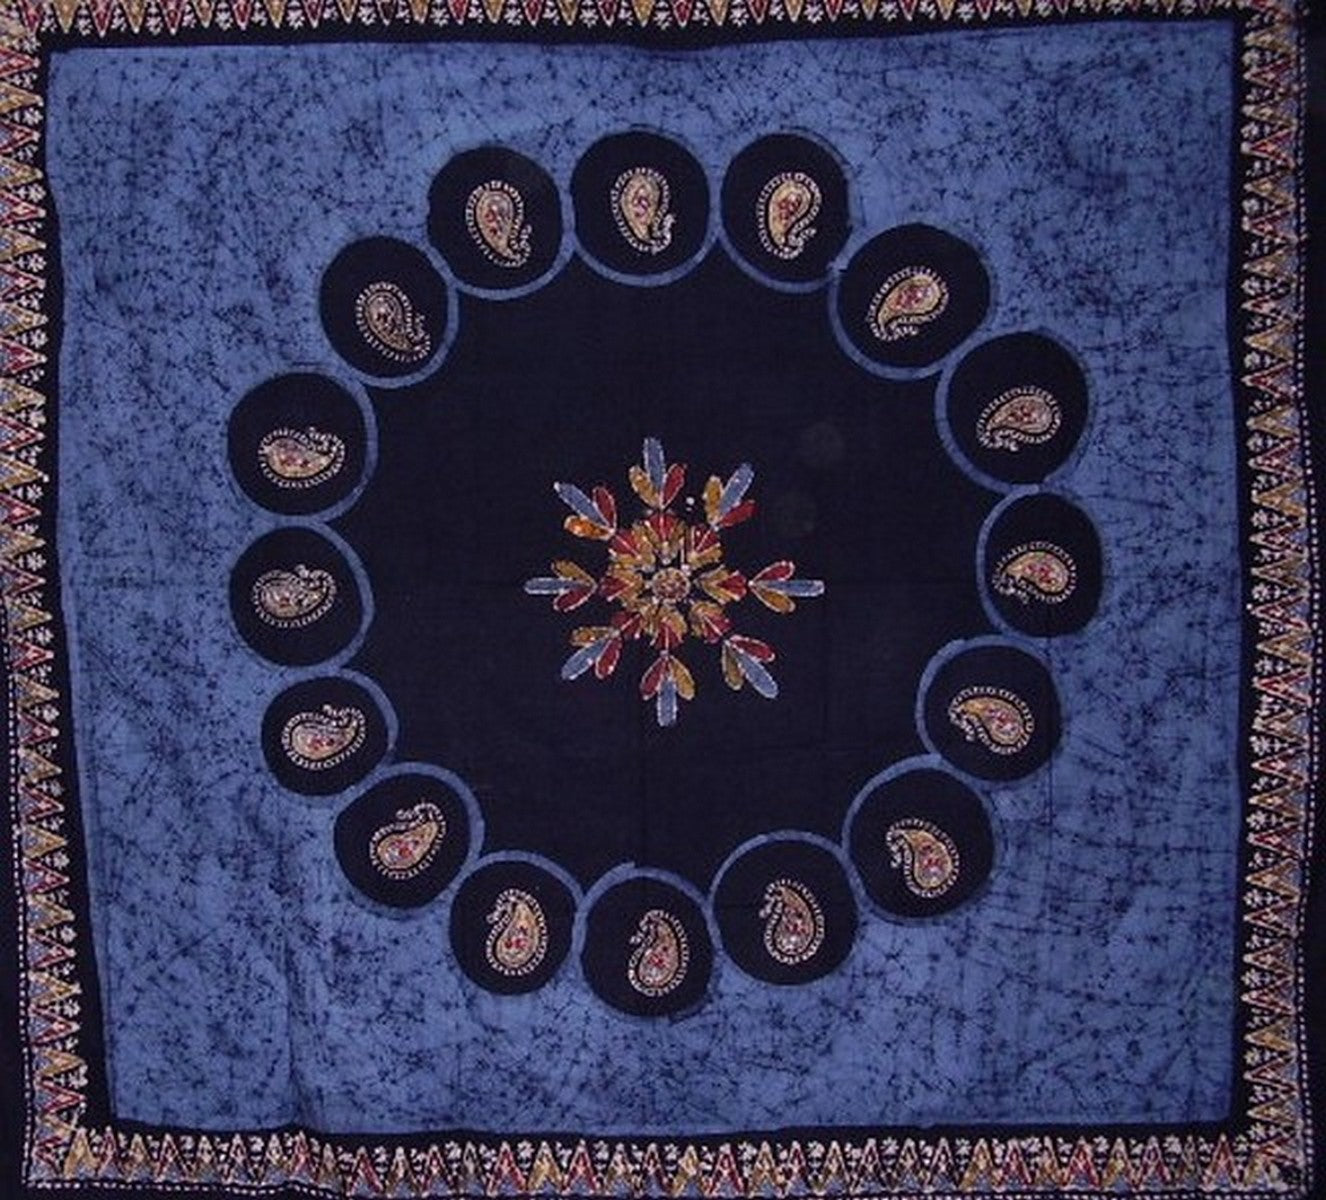 Copriletto in cotone con arazzo batik 108 x 108 pollici Queen-King blu